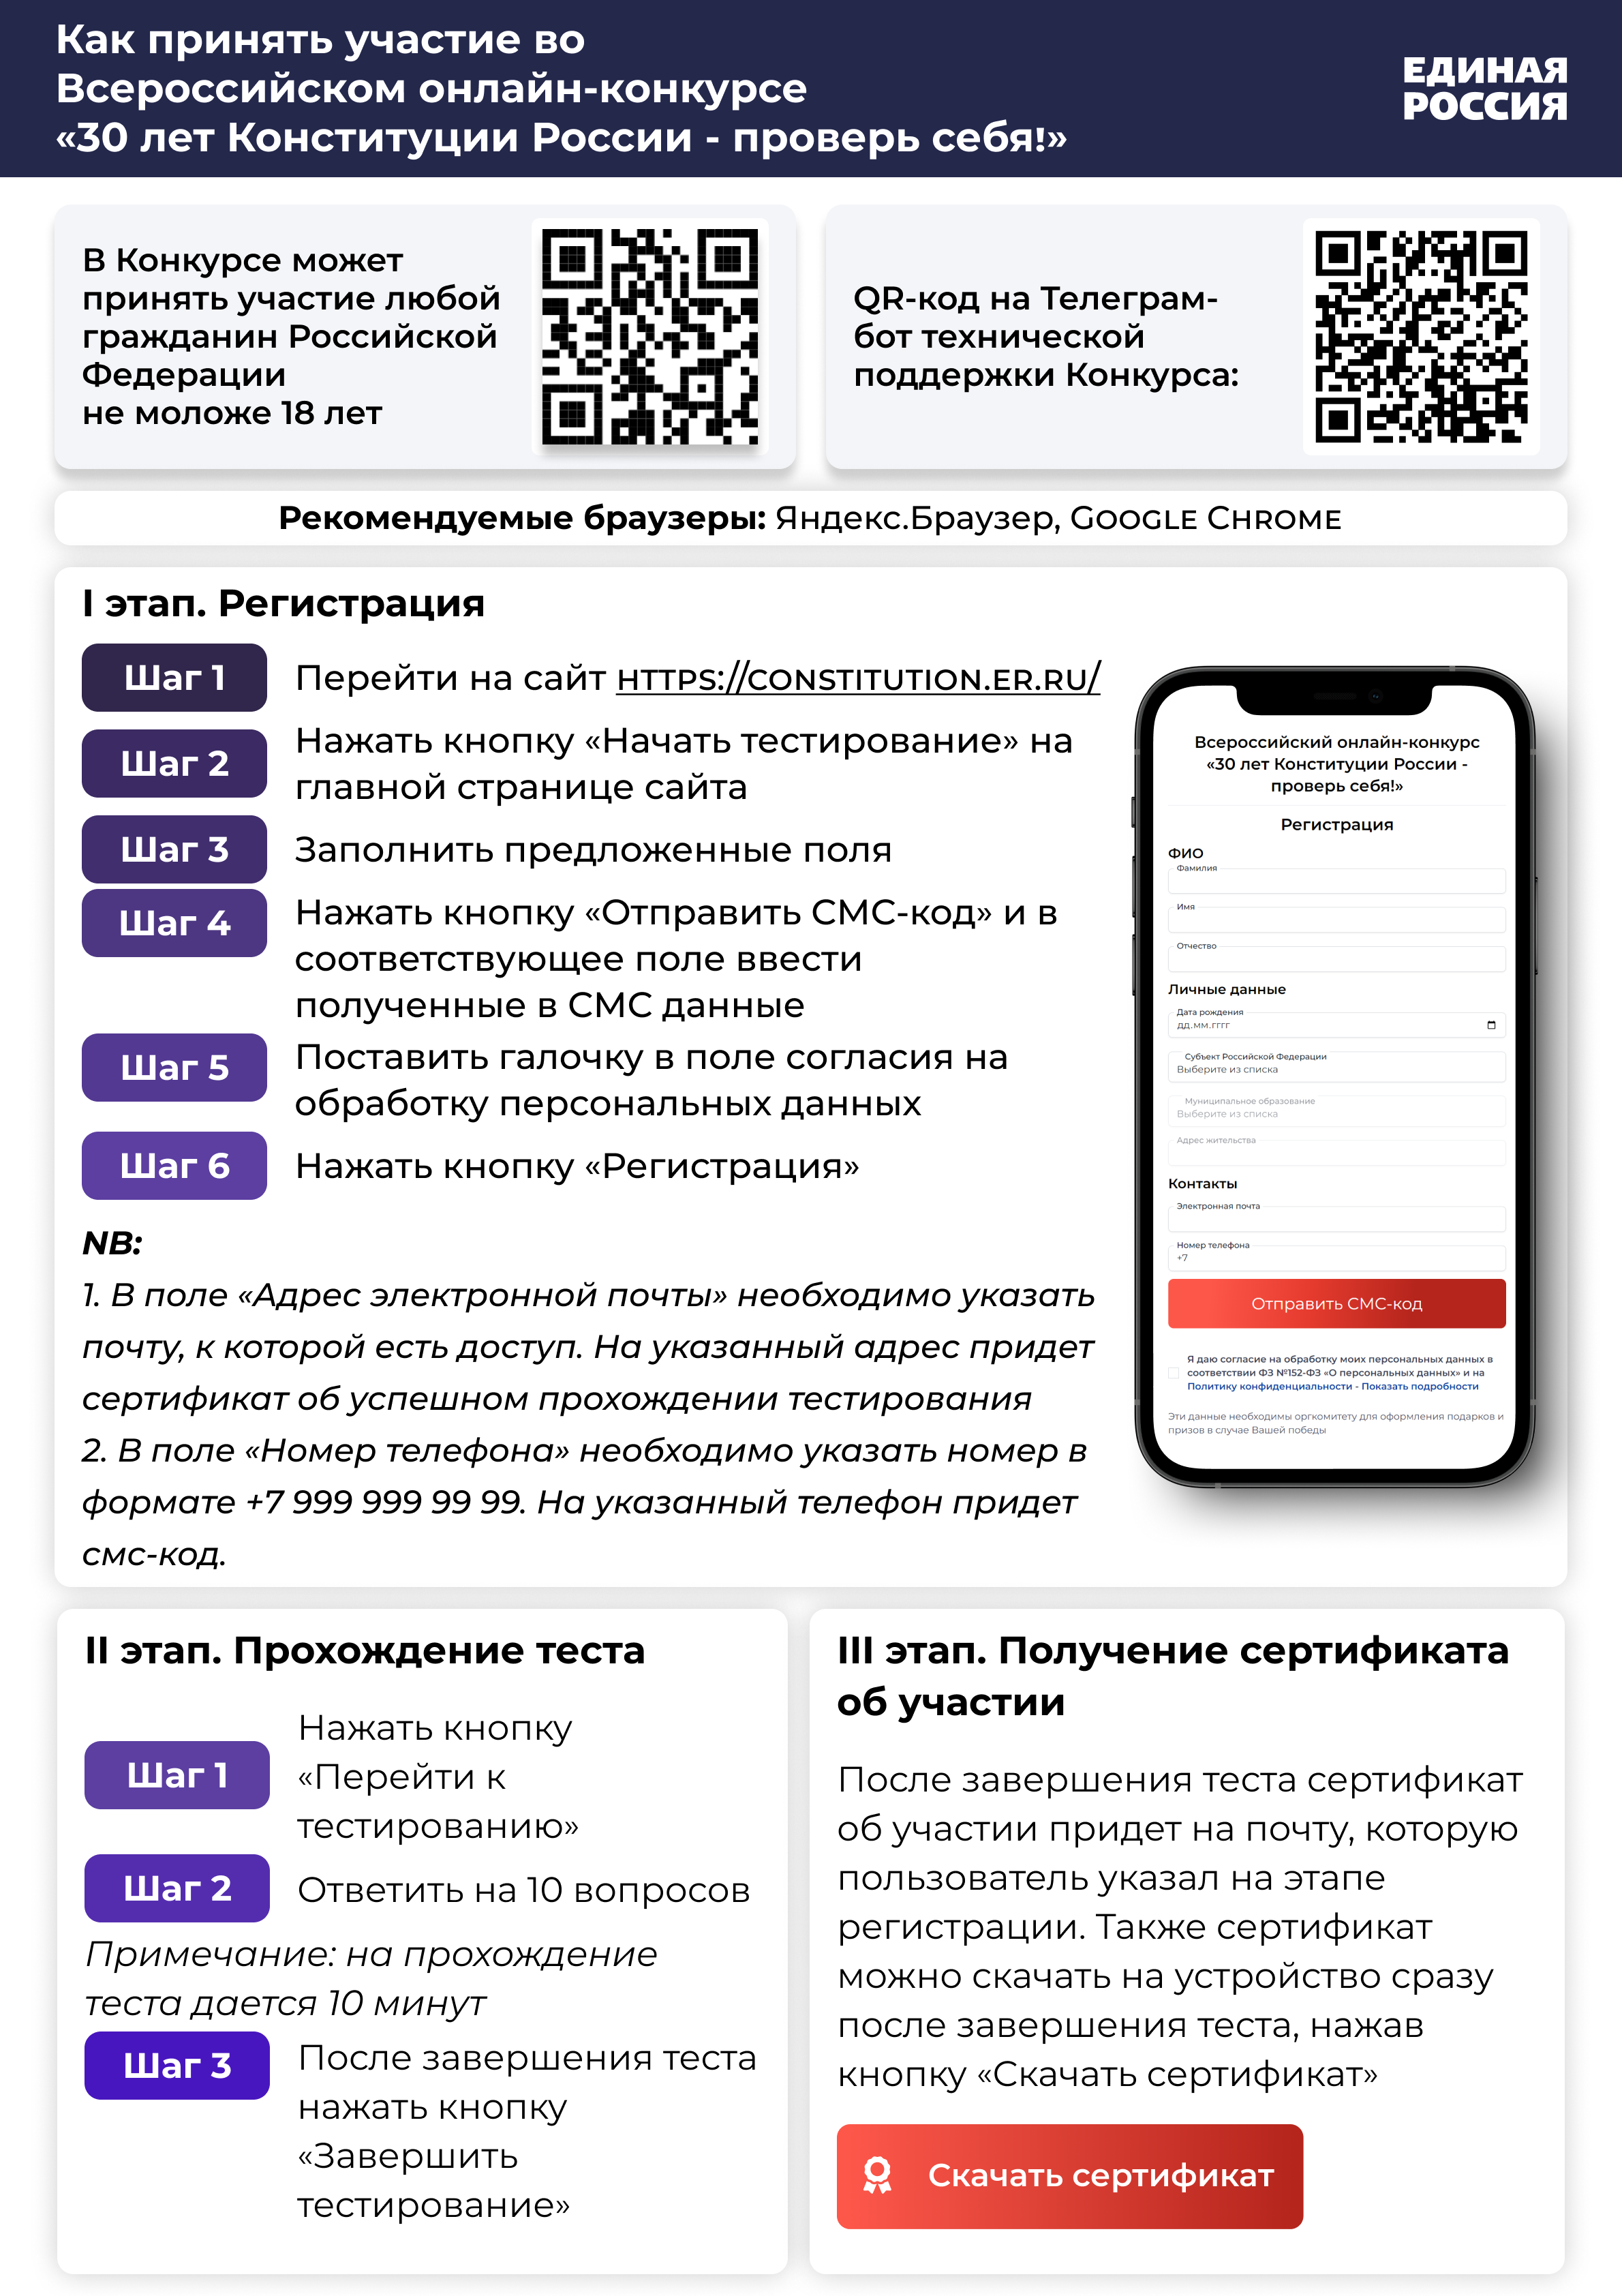 Памятка для участия в онлайн-конкурсе к 30-летию Конституции РФ